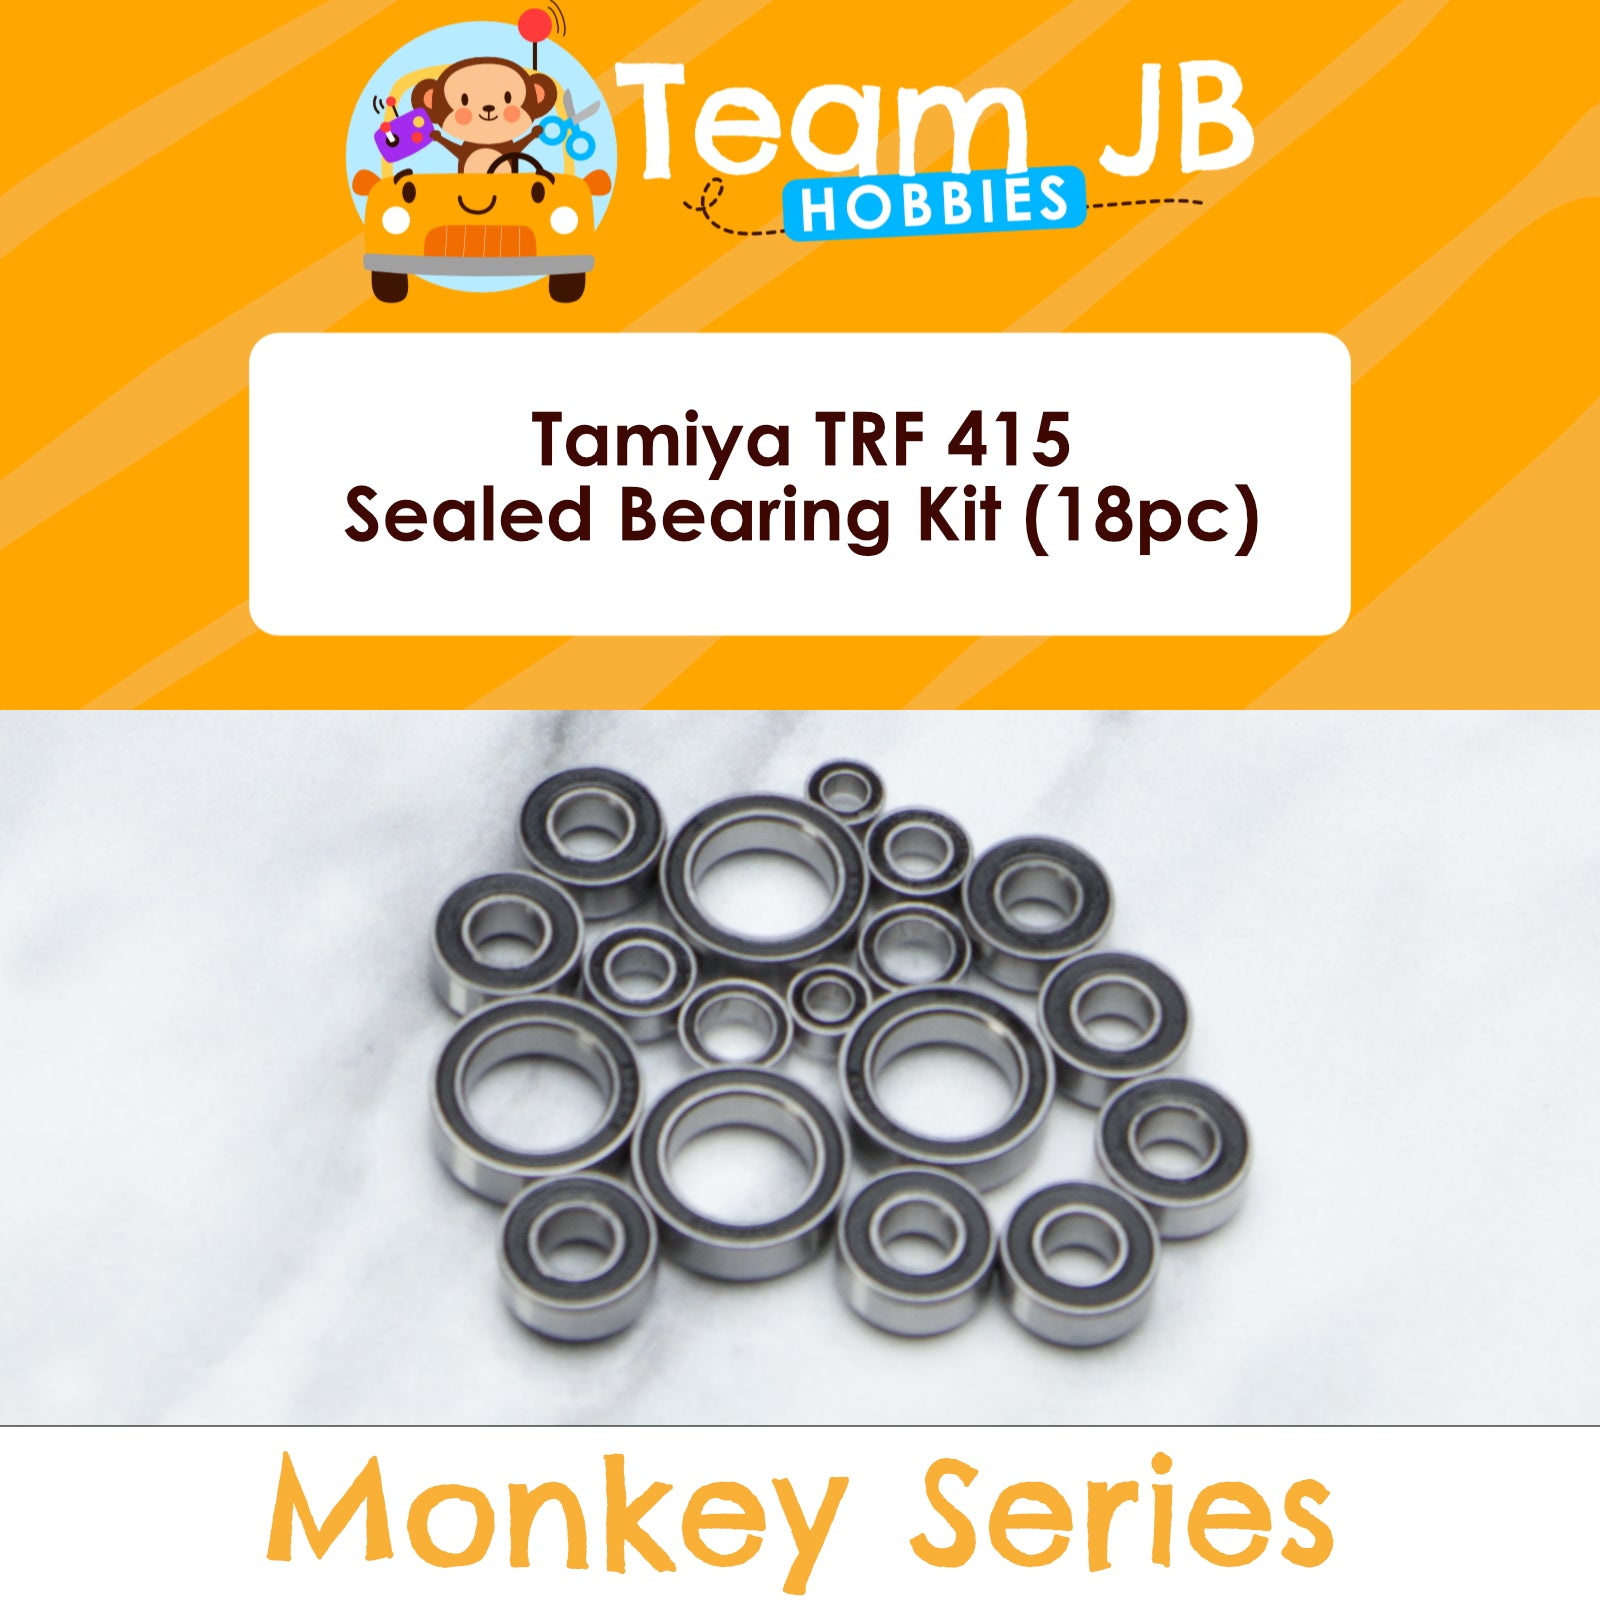 Tamiya TRF 415 - Sealed Bearing Kit